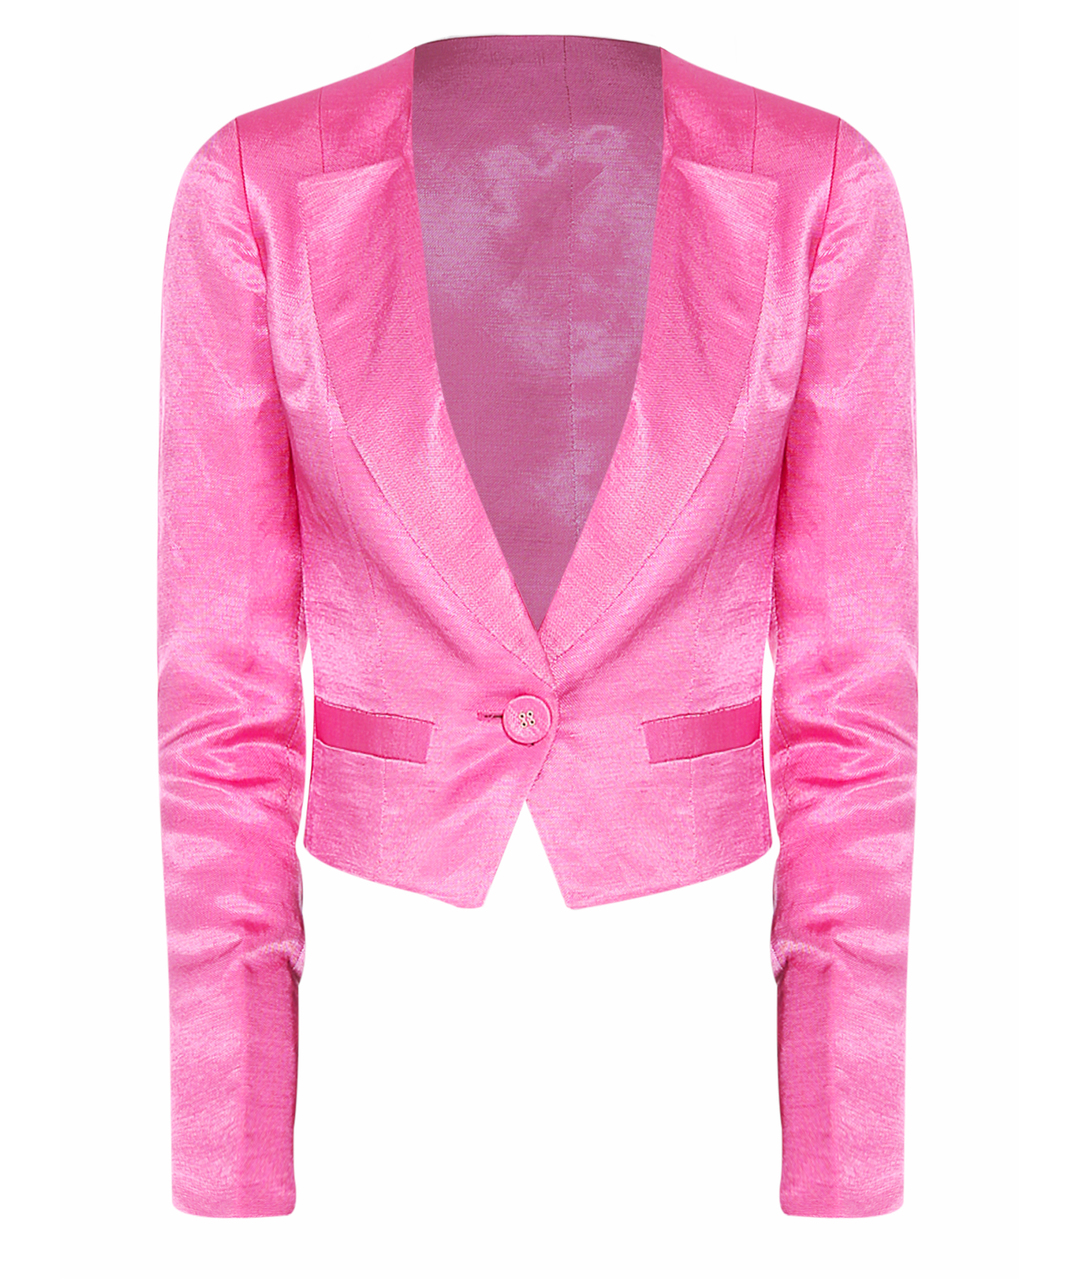 GIANFRANCO FERRE Розовый льняной жакет/пиджак, фото 1